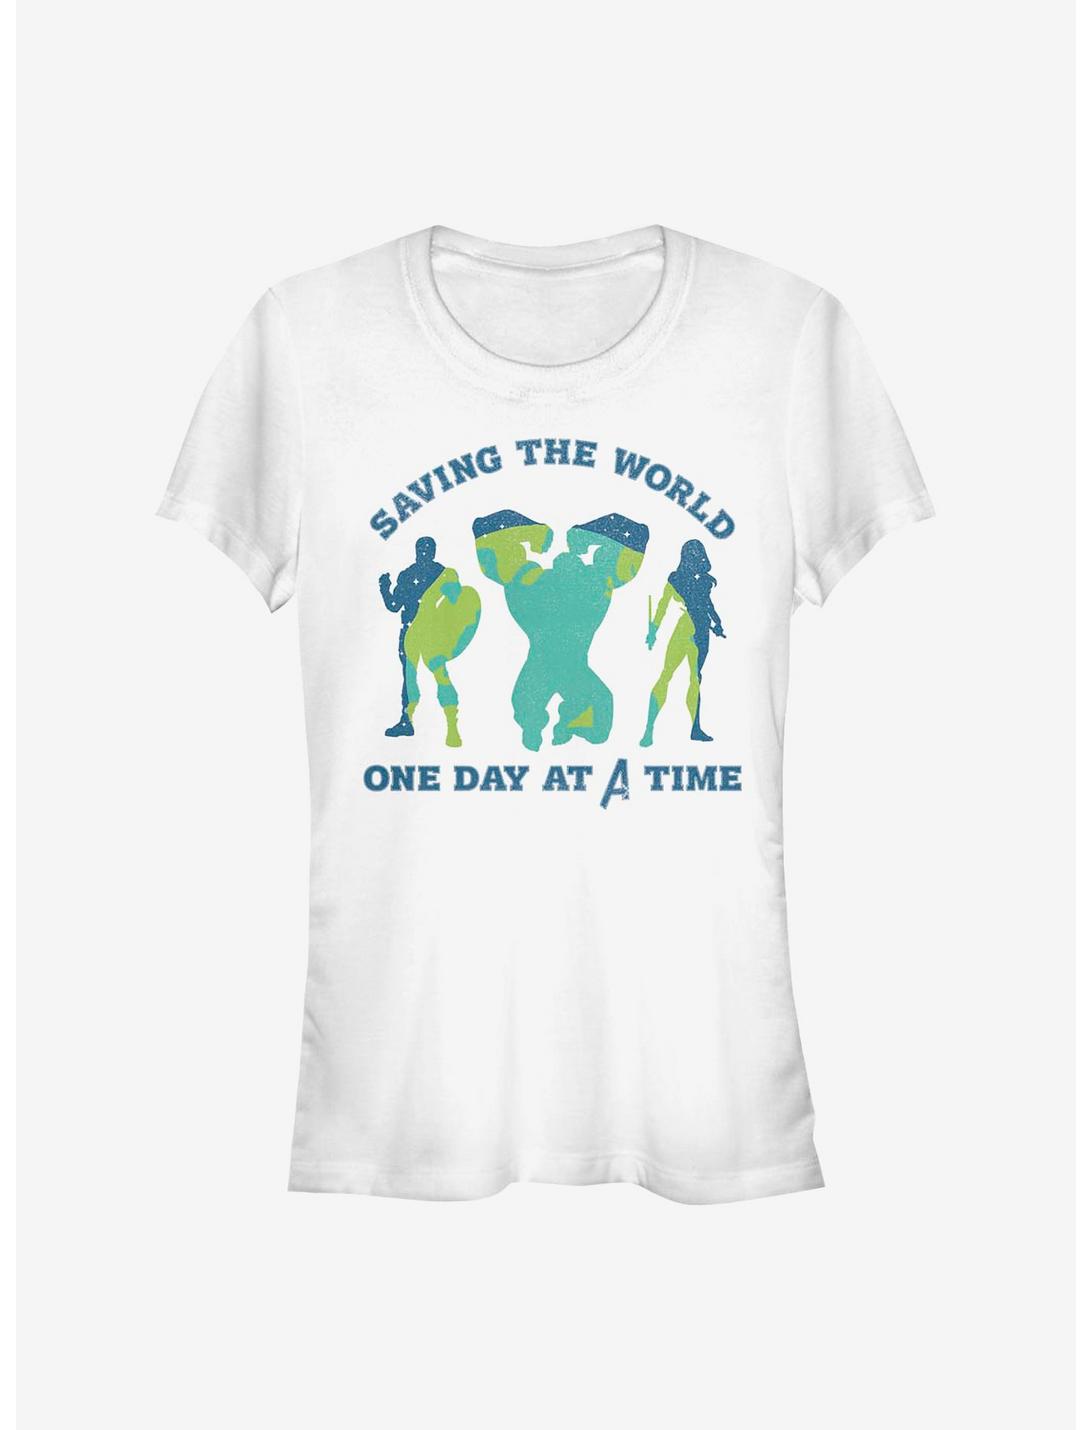 Marvel Avengers Team Earth Day Girls T-Shirt, WHITE, hi-res